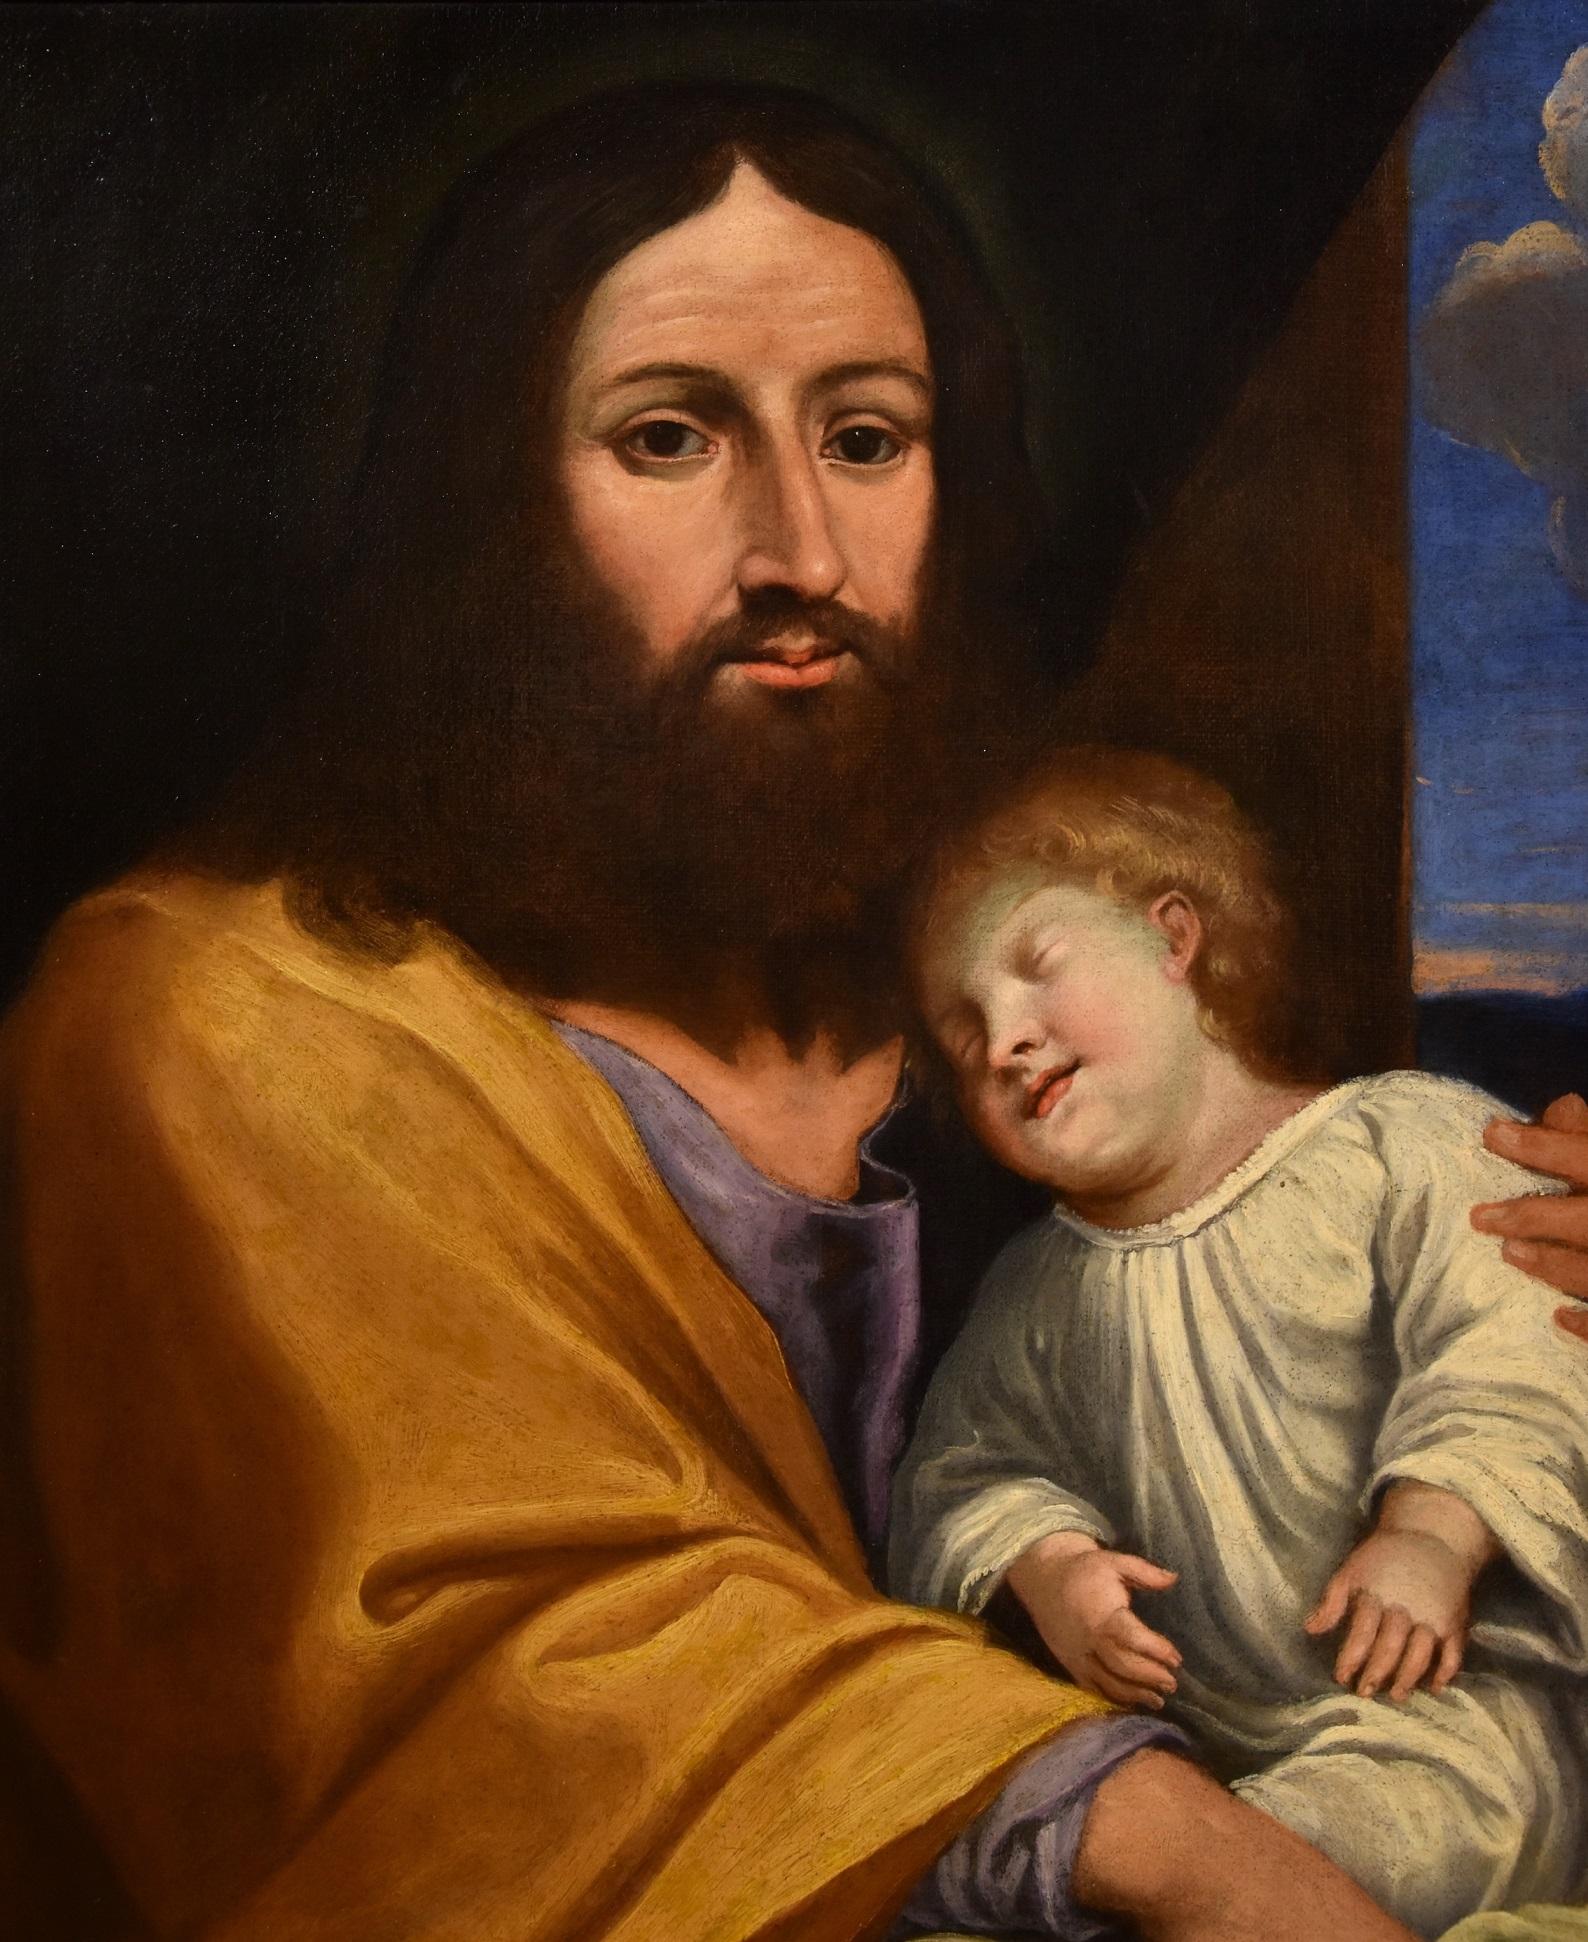 Peinture ancienne représentant Jésus avec le fils du commissaire
(Lecture alternative : Saint Joseph avec l'enfant, ou la 'Paternité')

Giovan Battista Salvi dit 